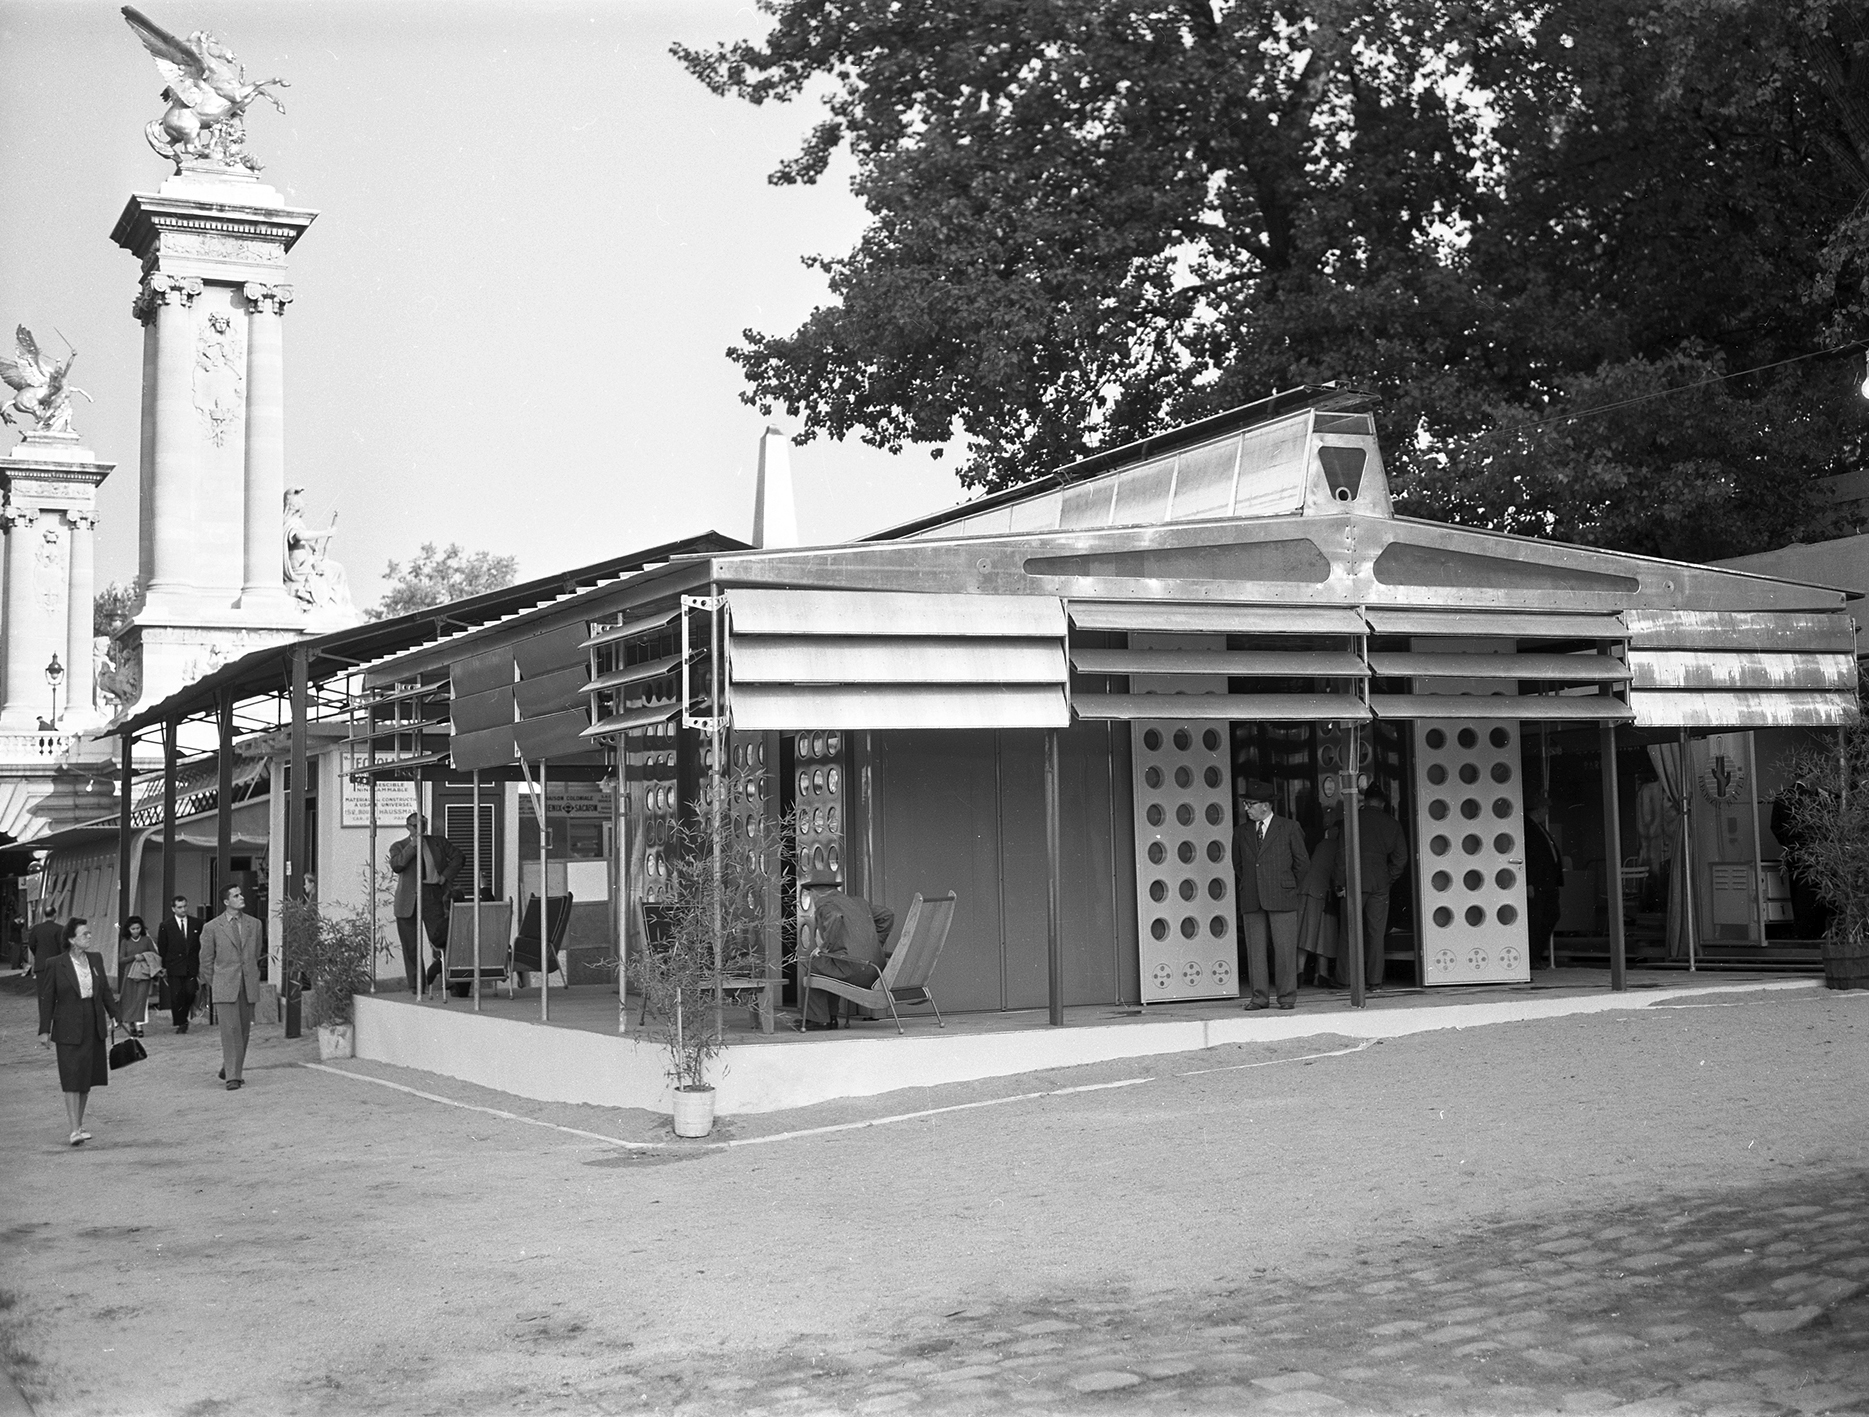 Tropique house for Niamey, prototype at Exposition pour l’équipement de l’Union française, quai Alexandre-III, Paris, 1949.